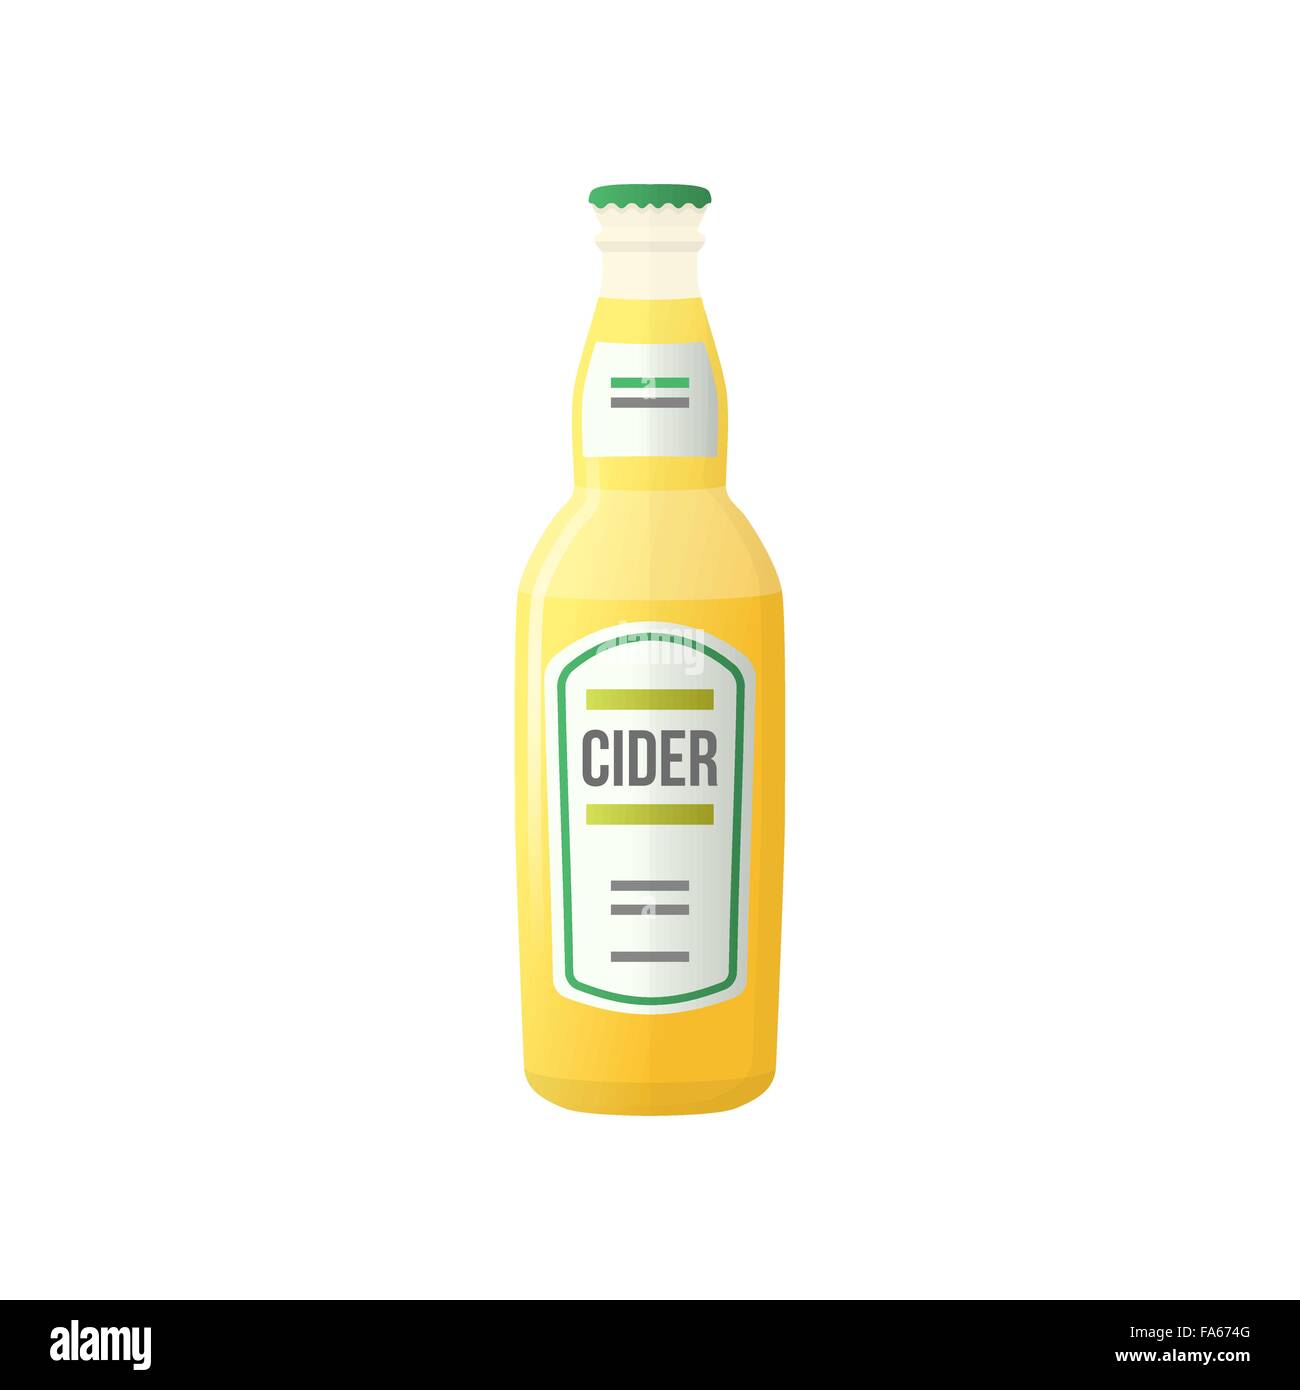 Vettore di colore giallo chiaro design piatto apple sidro di pere bottiglia con etichetta illustrazione isolato su sfondo bianco Illustrazione Vettoriale